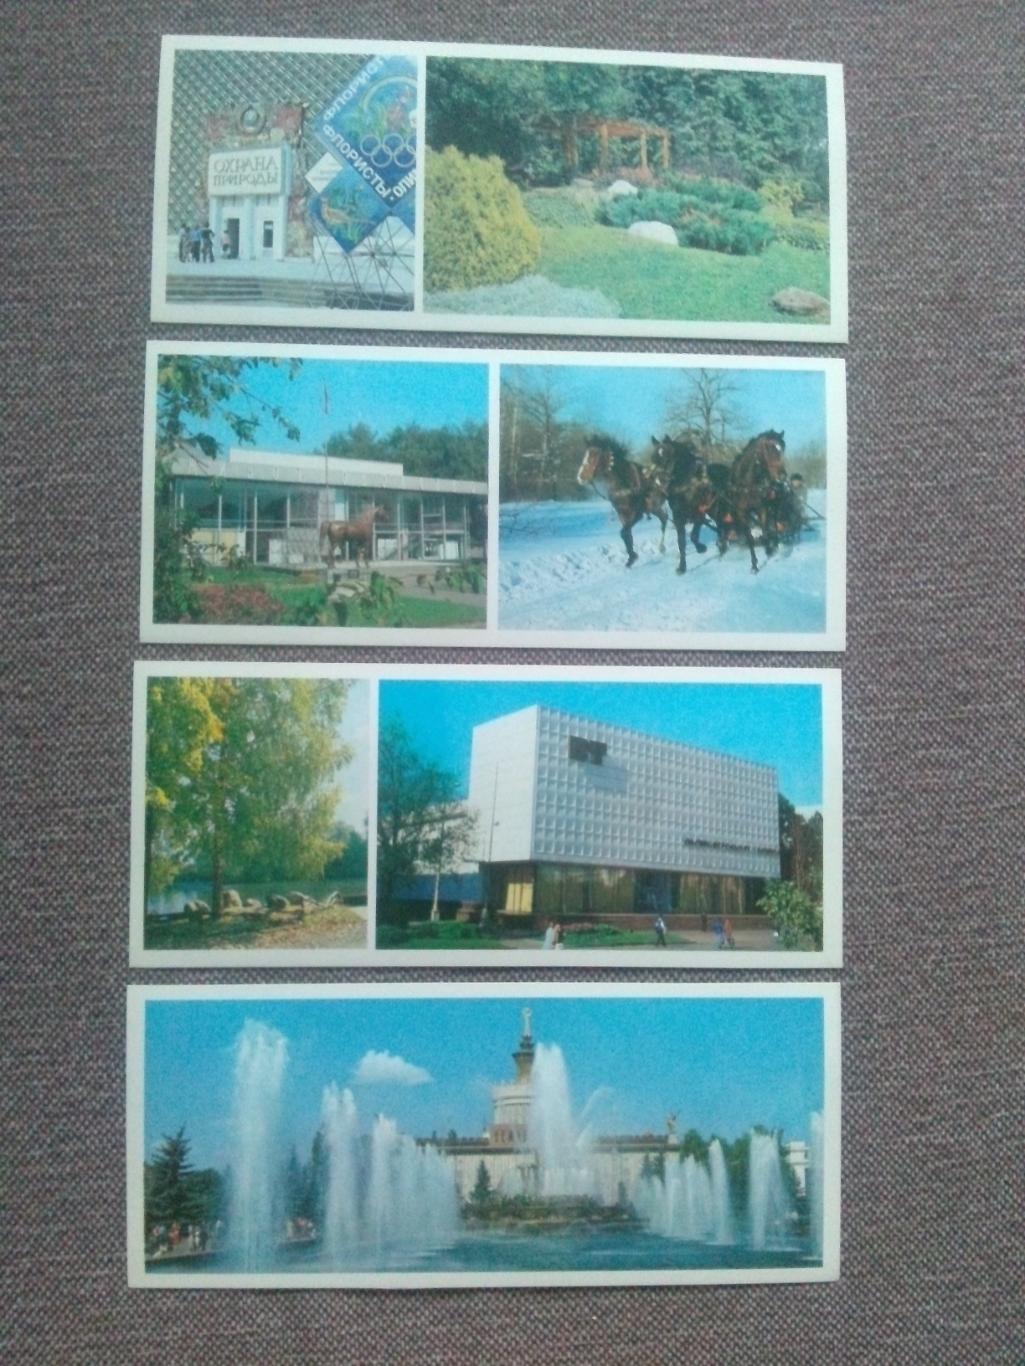 Памятные места СССР : ВДНХ СССР 1985 г. полный набор - 15 открыток (Выставка) 2